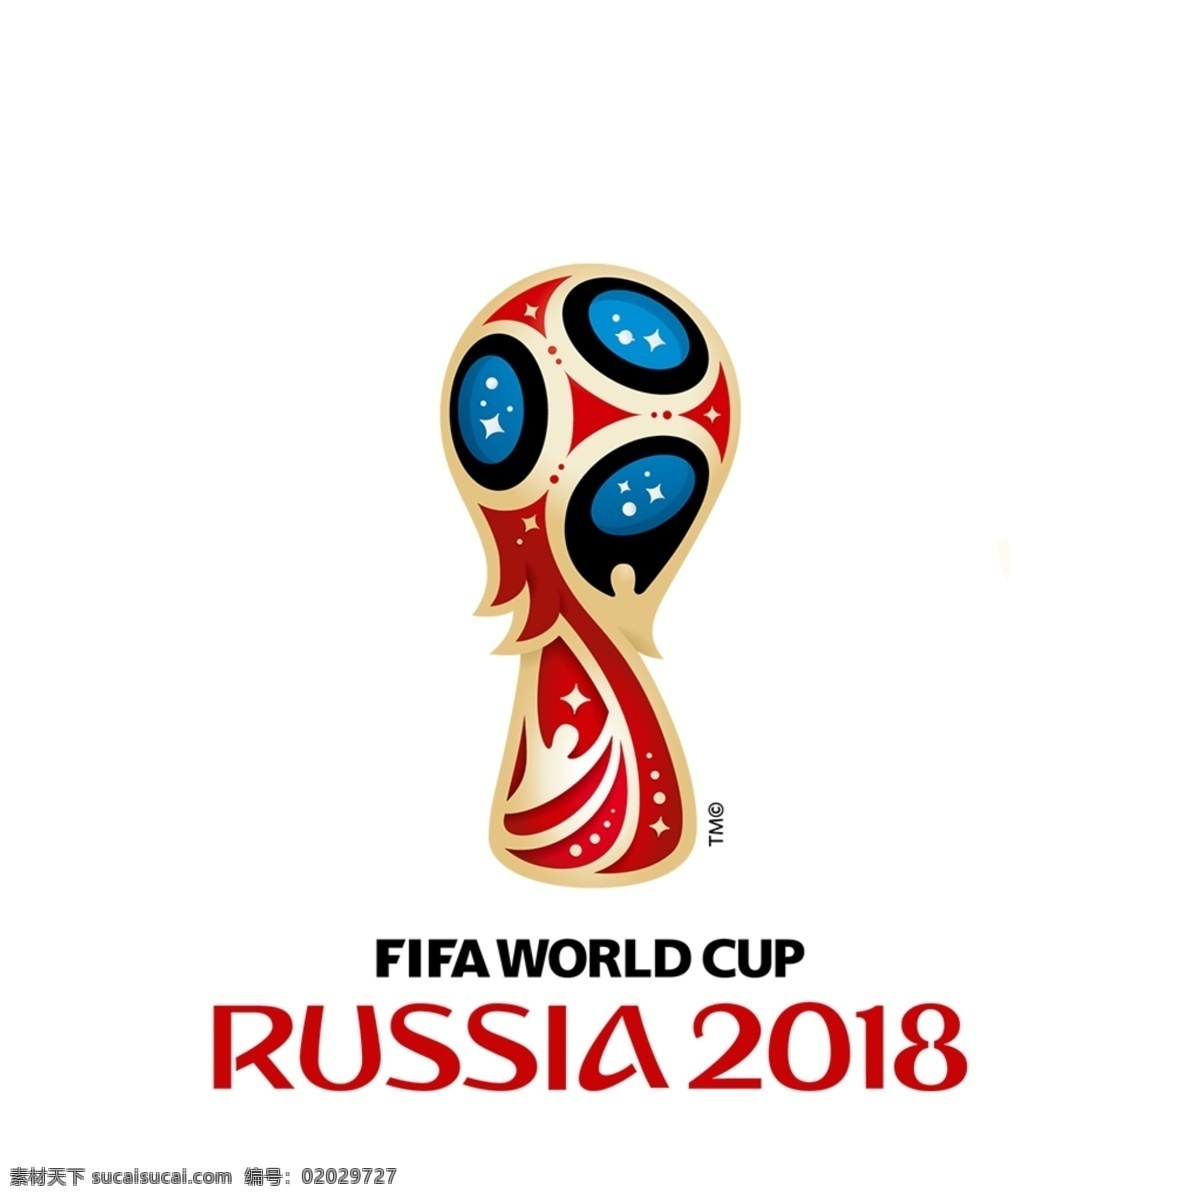 原创 2018 世界杯 蓝色 足球 矢量 蓝色足球 俄罗斯世界杯 海报 logo设计